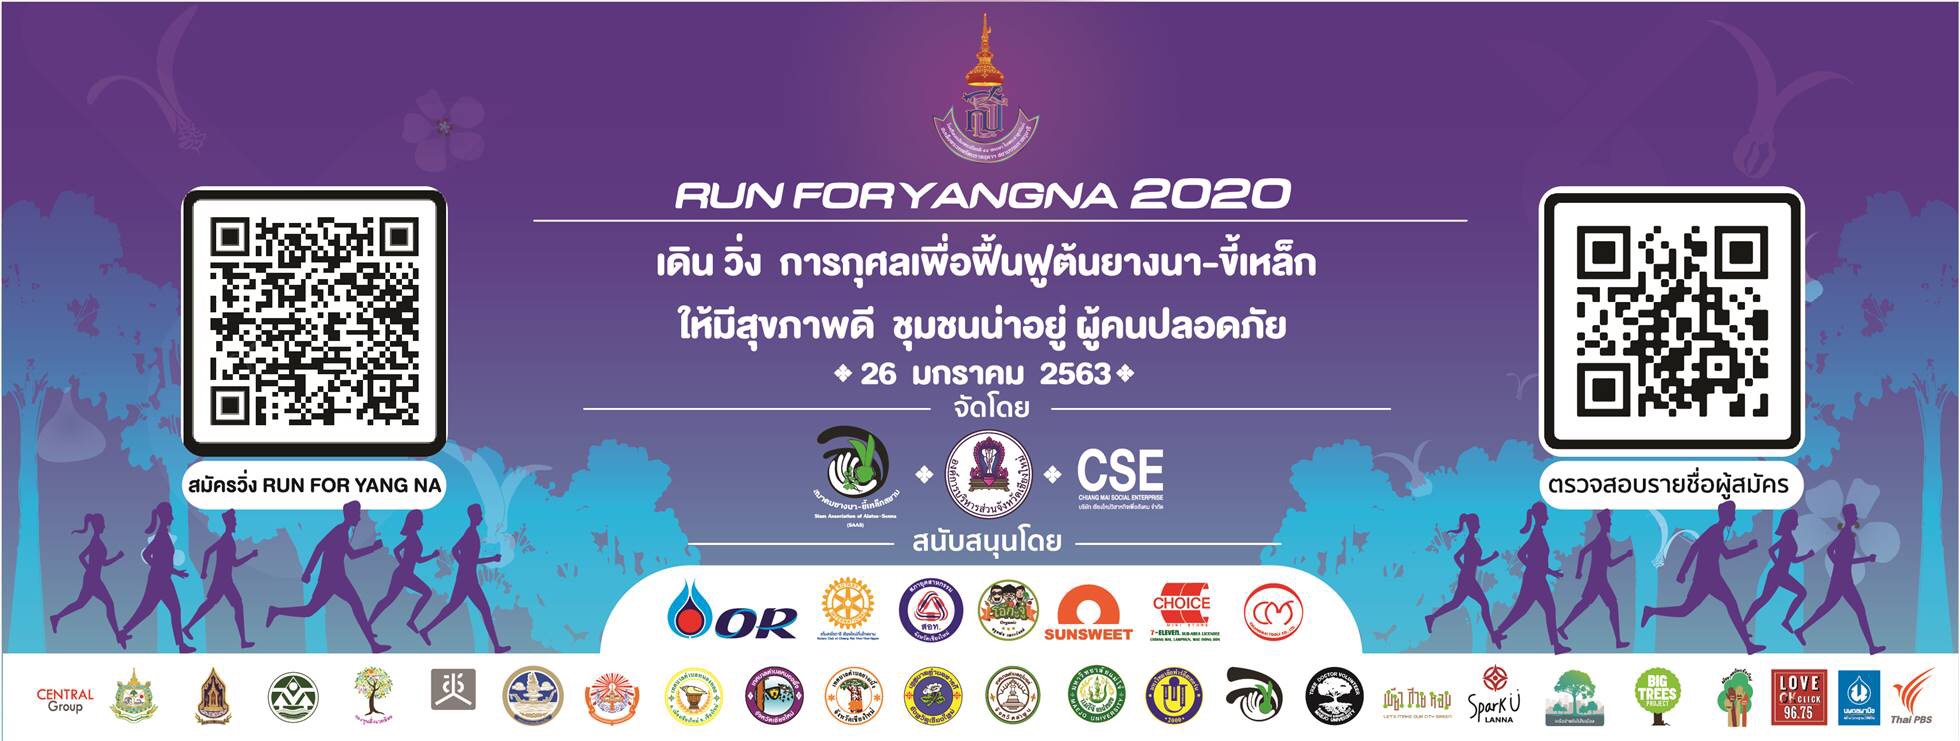 เชียงใหม่ ประชุมเตรียมจัดงานเดินวิ่งการกุศลระดมทุนเพื่อฟื้นฟูต้นยางนา Run for Yangna 2020  